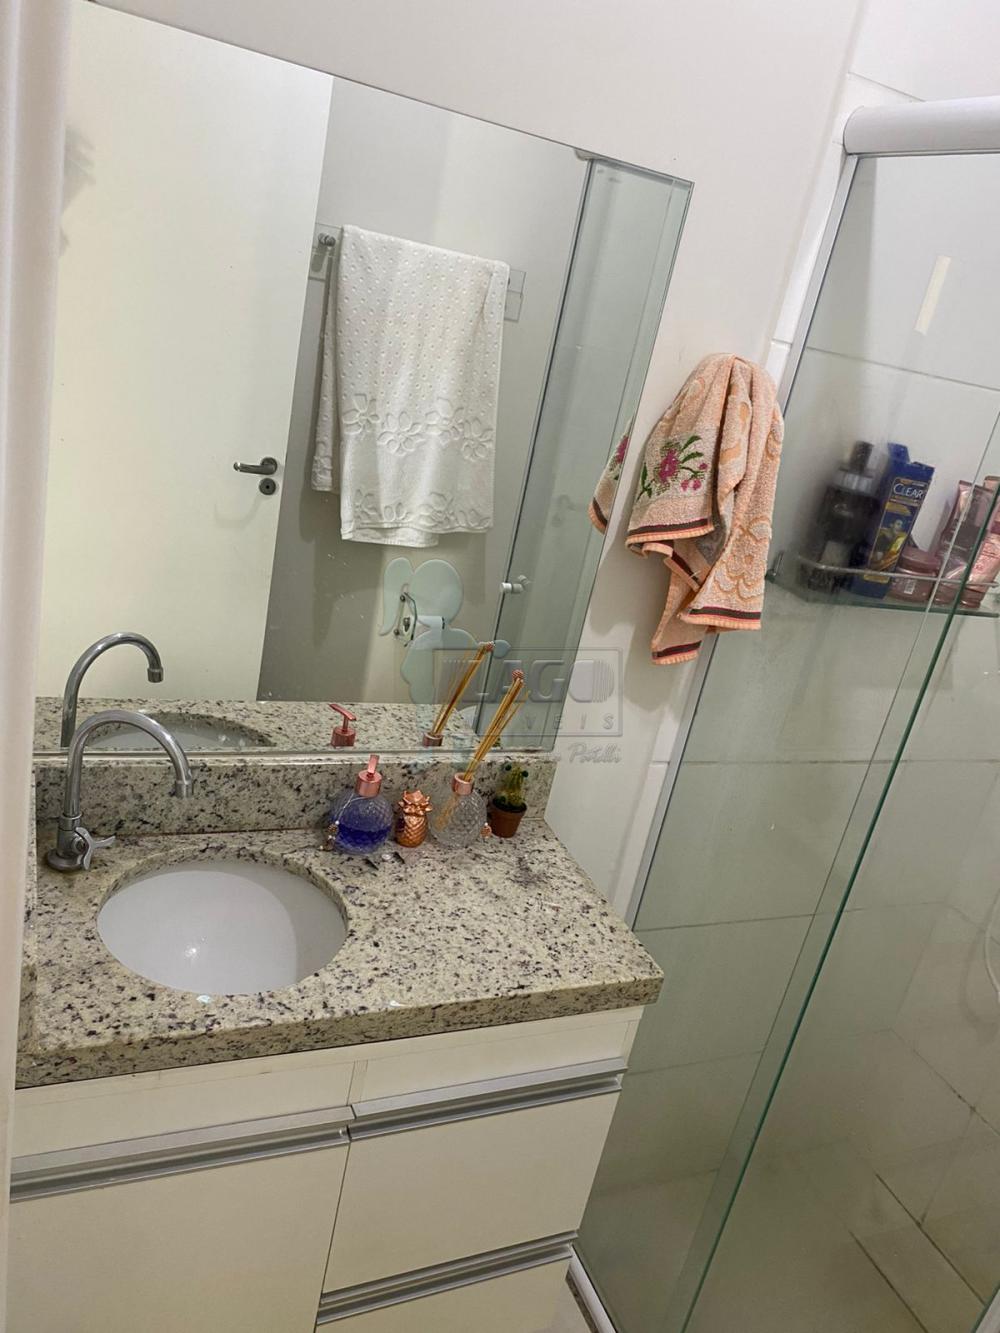 Comprar Apartamento / Padrão em Ribeirão Preto R$ 210.000,00 - Foto 7